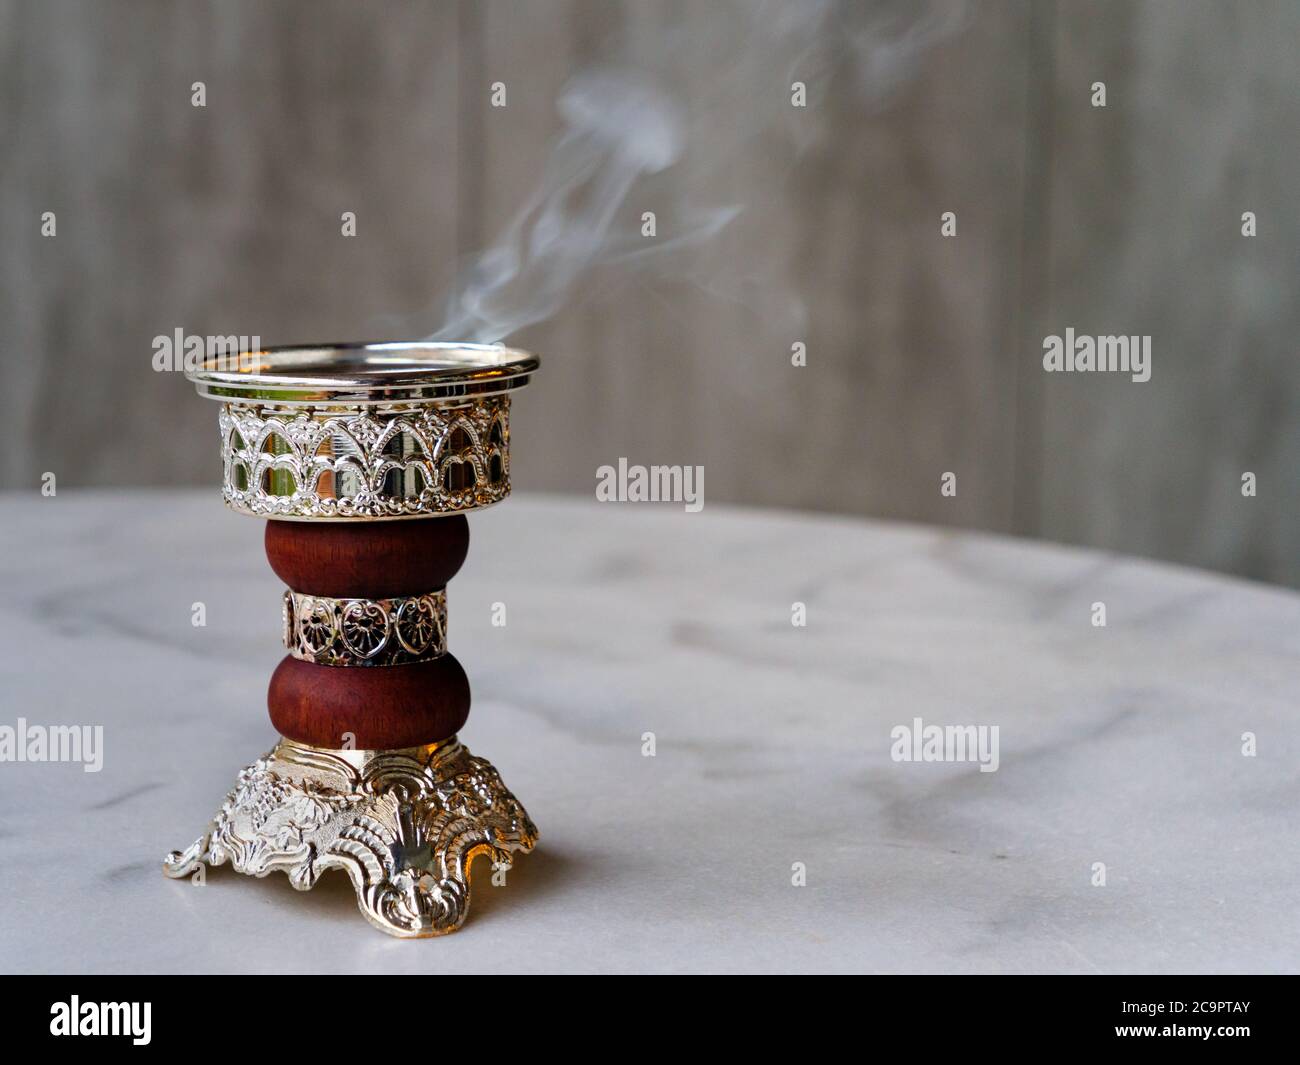 Quemador de incienso de Bakhoor Arábigo adornado / incensario que emite humo blanco. Con espacio de copia Foto de stock